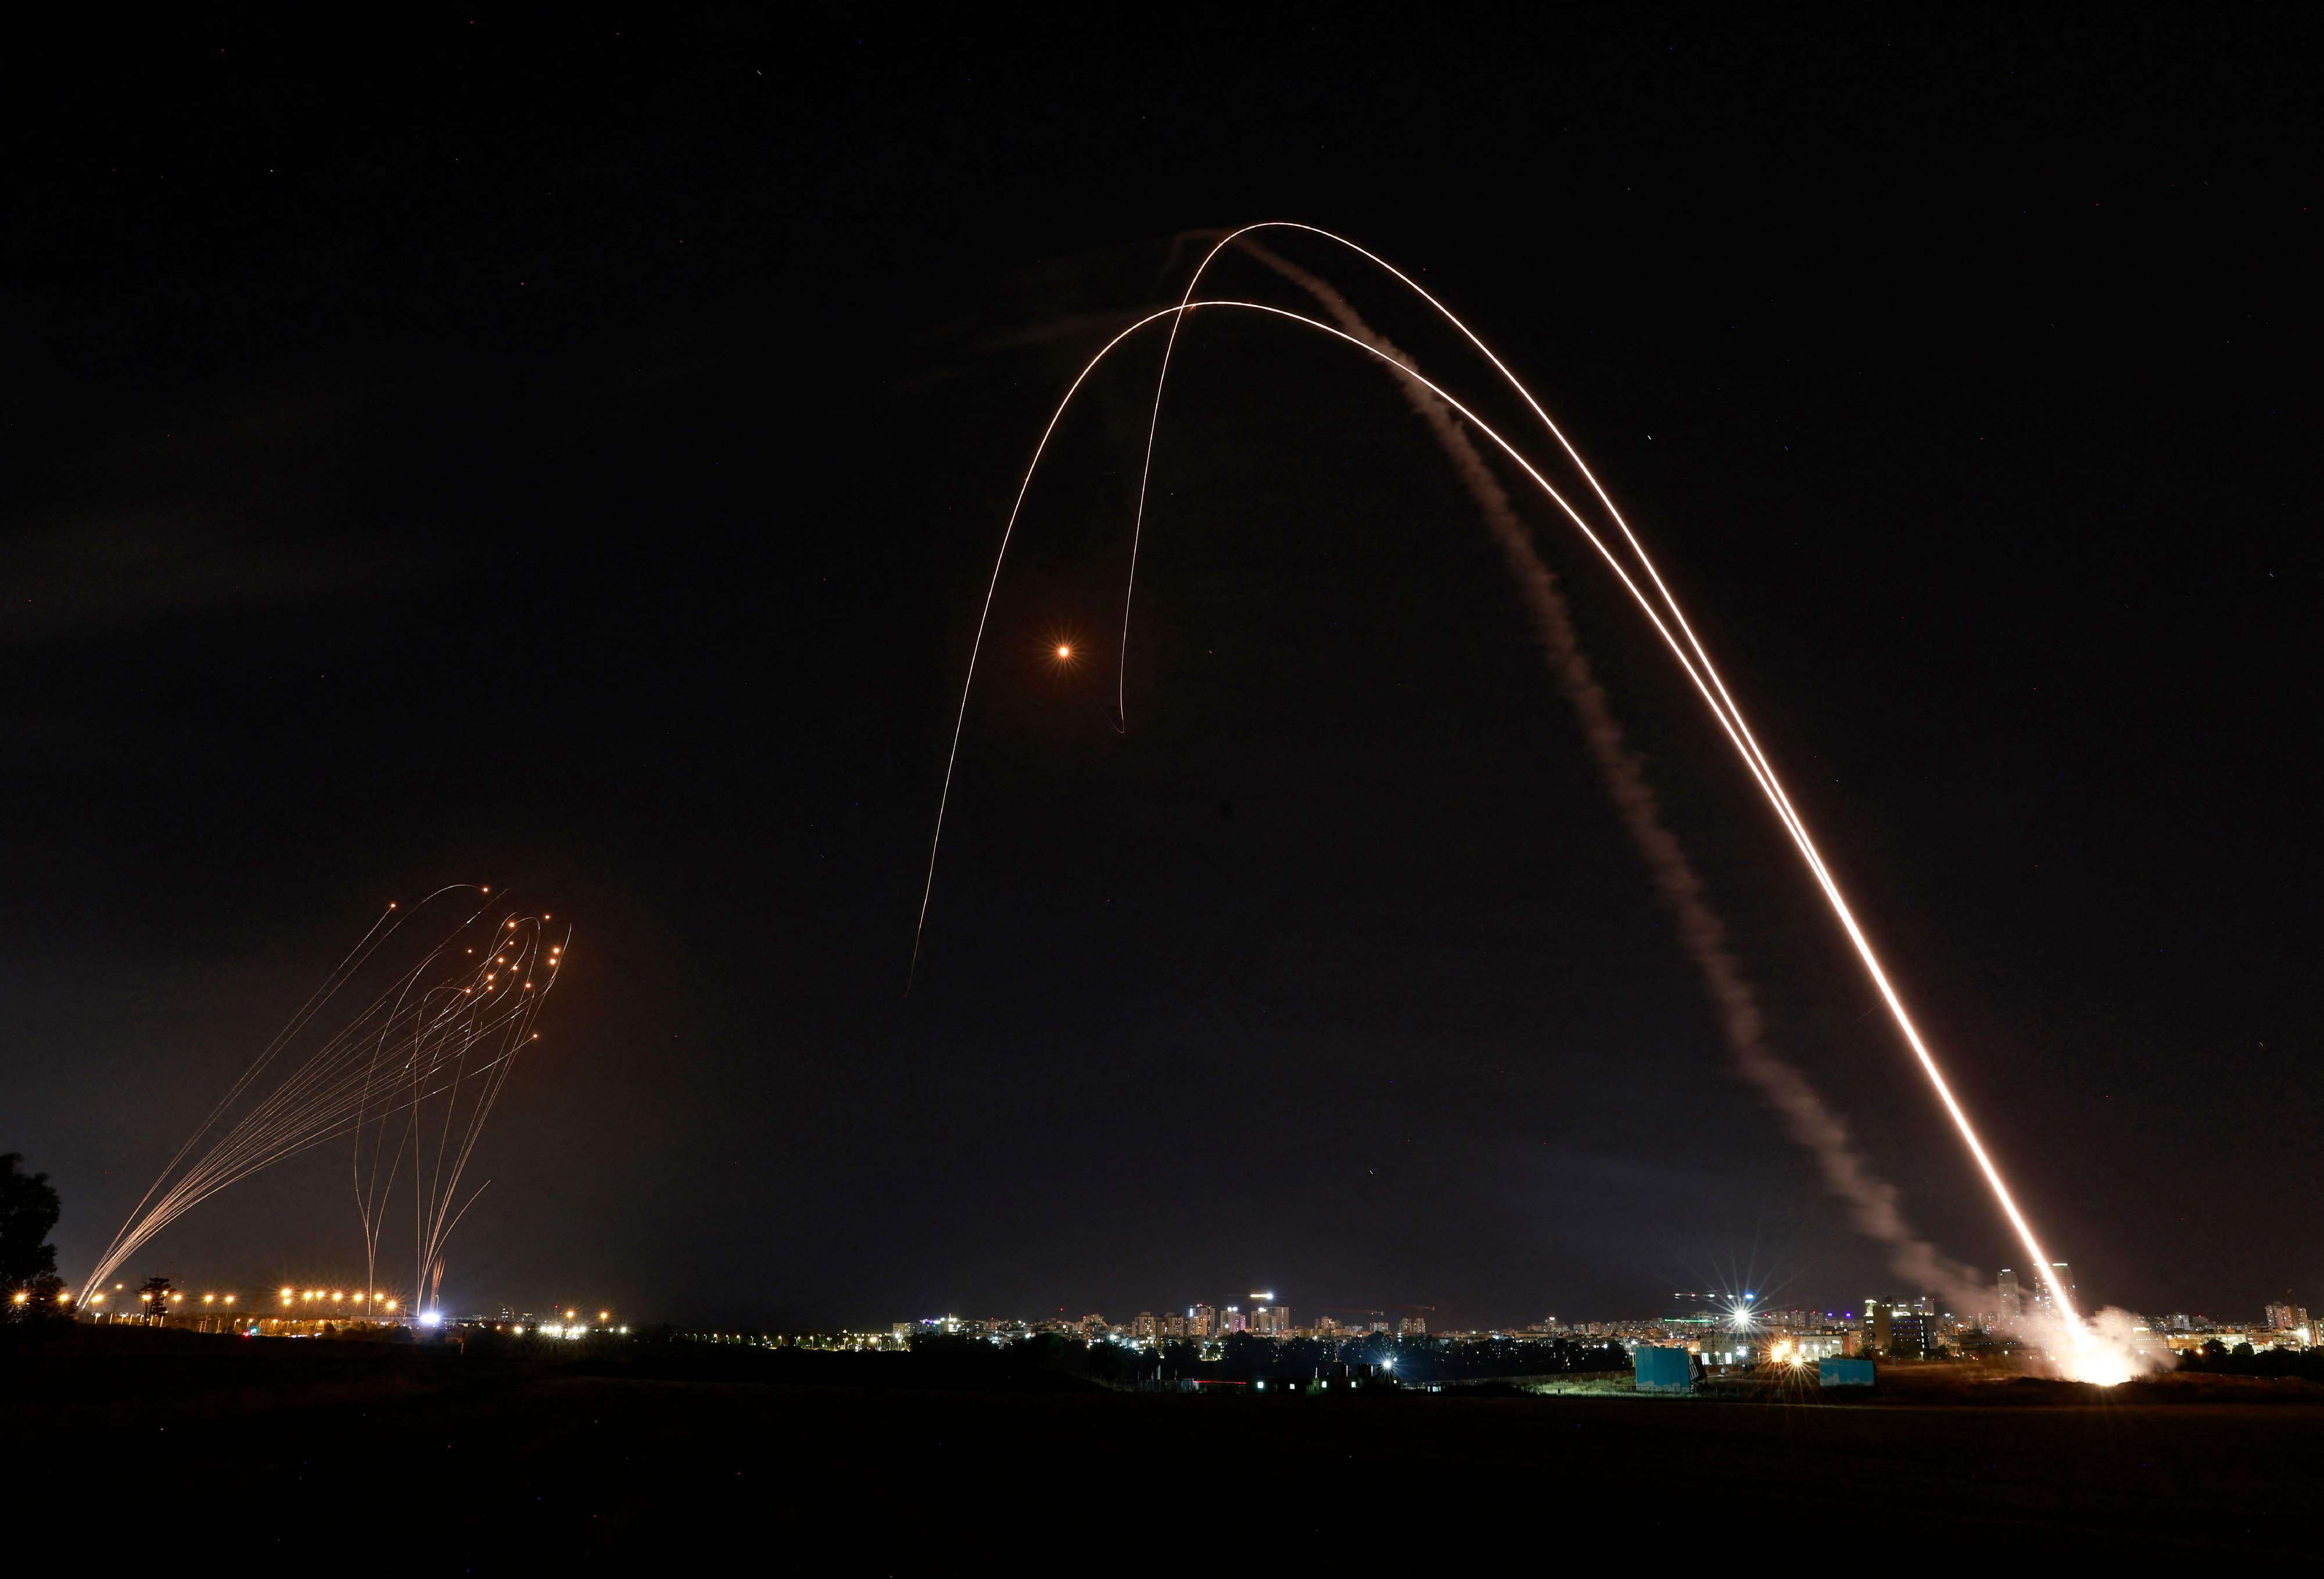 اسرائيل استخدمت نظام القبة الحديدية لاسقاط الصواريخ الفلسطينية في المواجهات الاخيرة